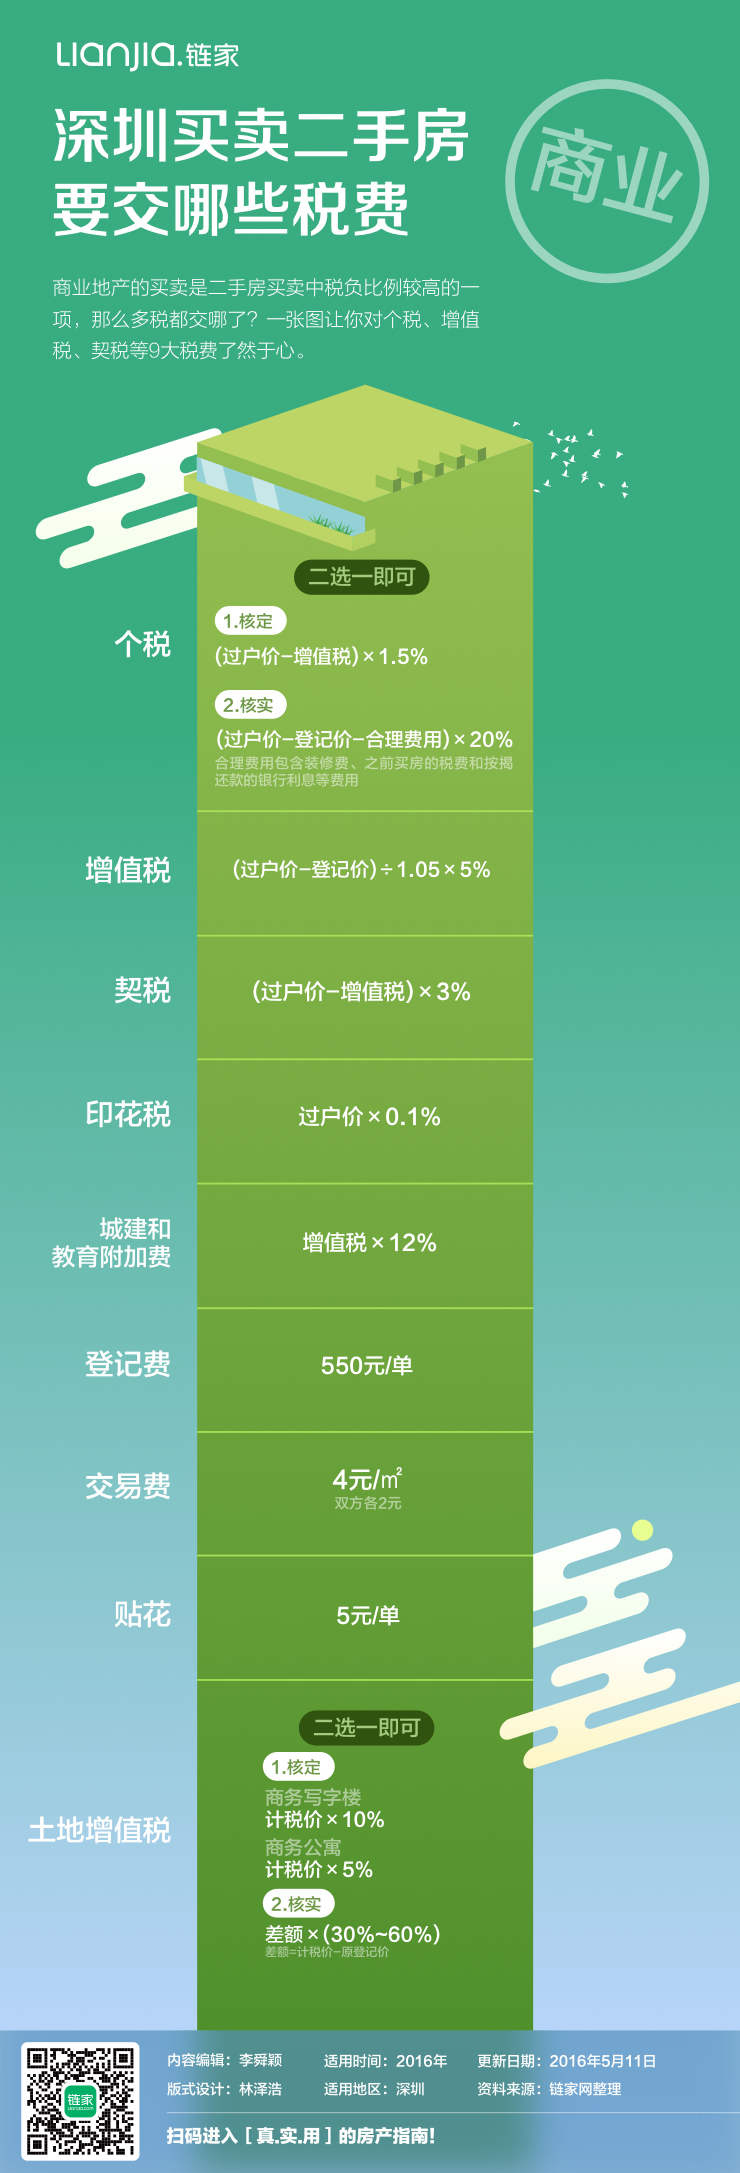 【长图】深圳买卖二手房要交哪些税费|信息图